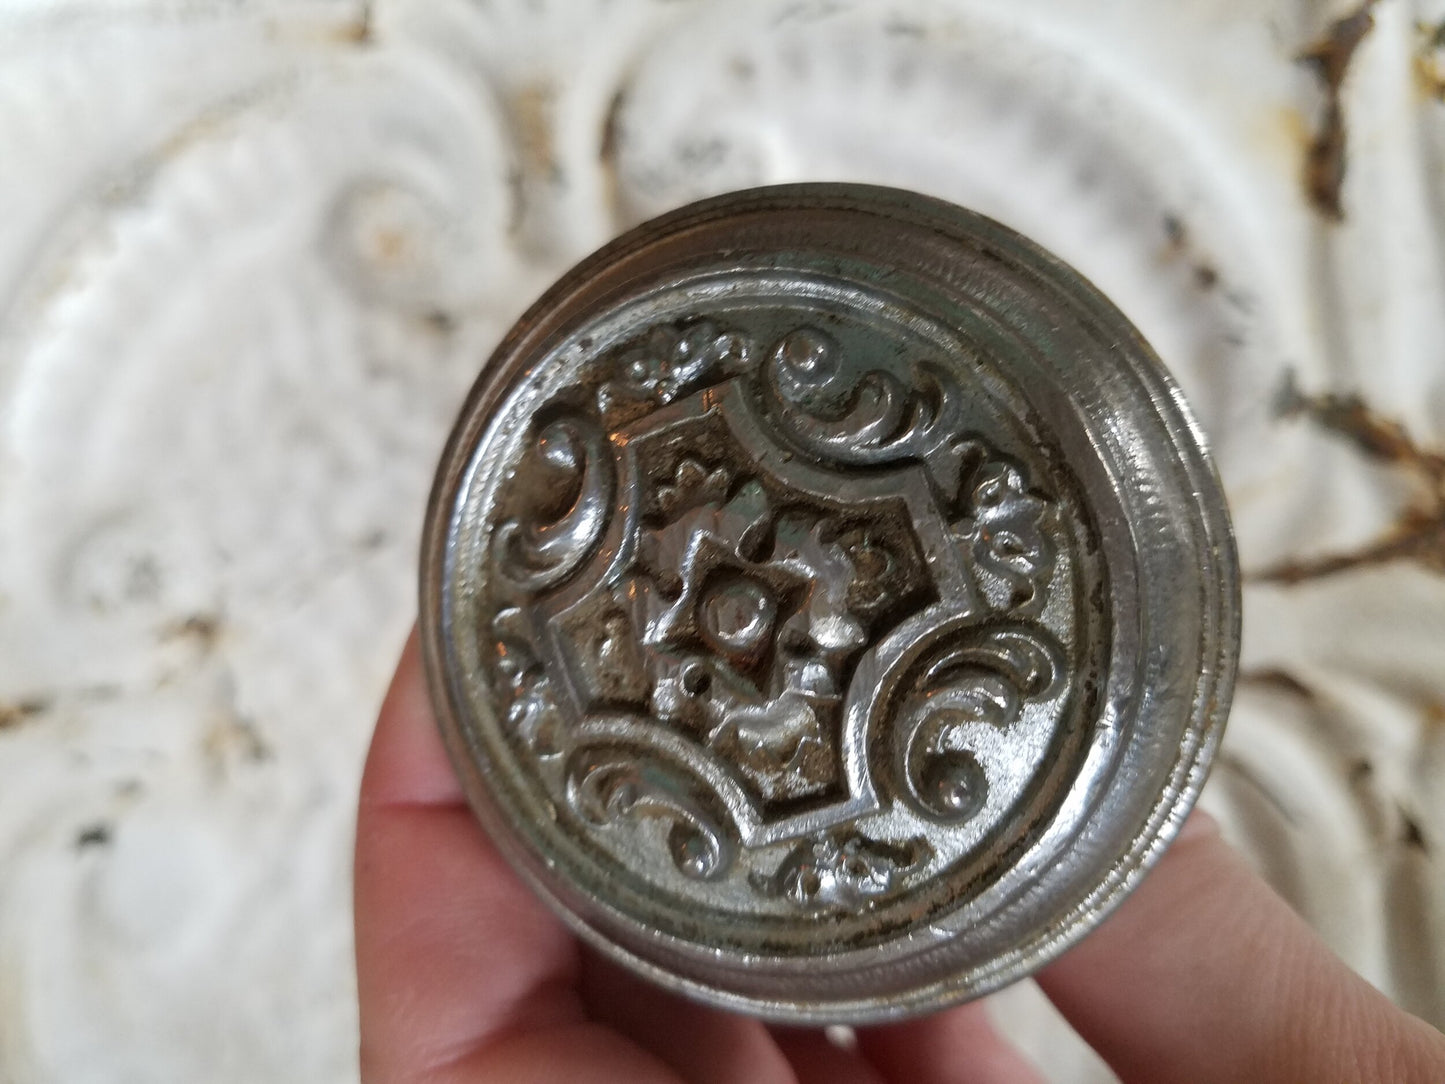 Paris Doorknob by Corbin, Antique Nickel Plated Doorknob